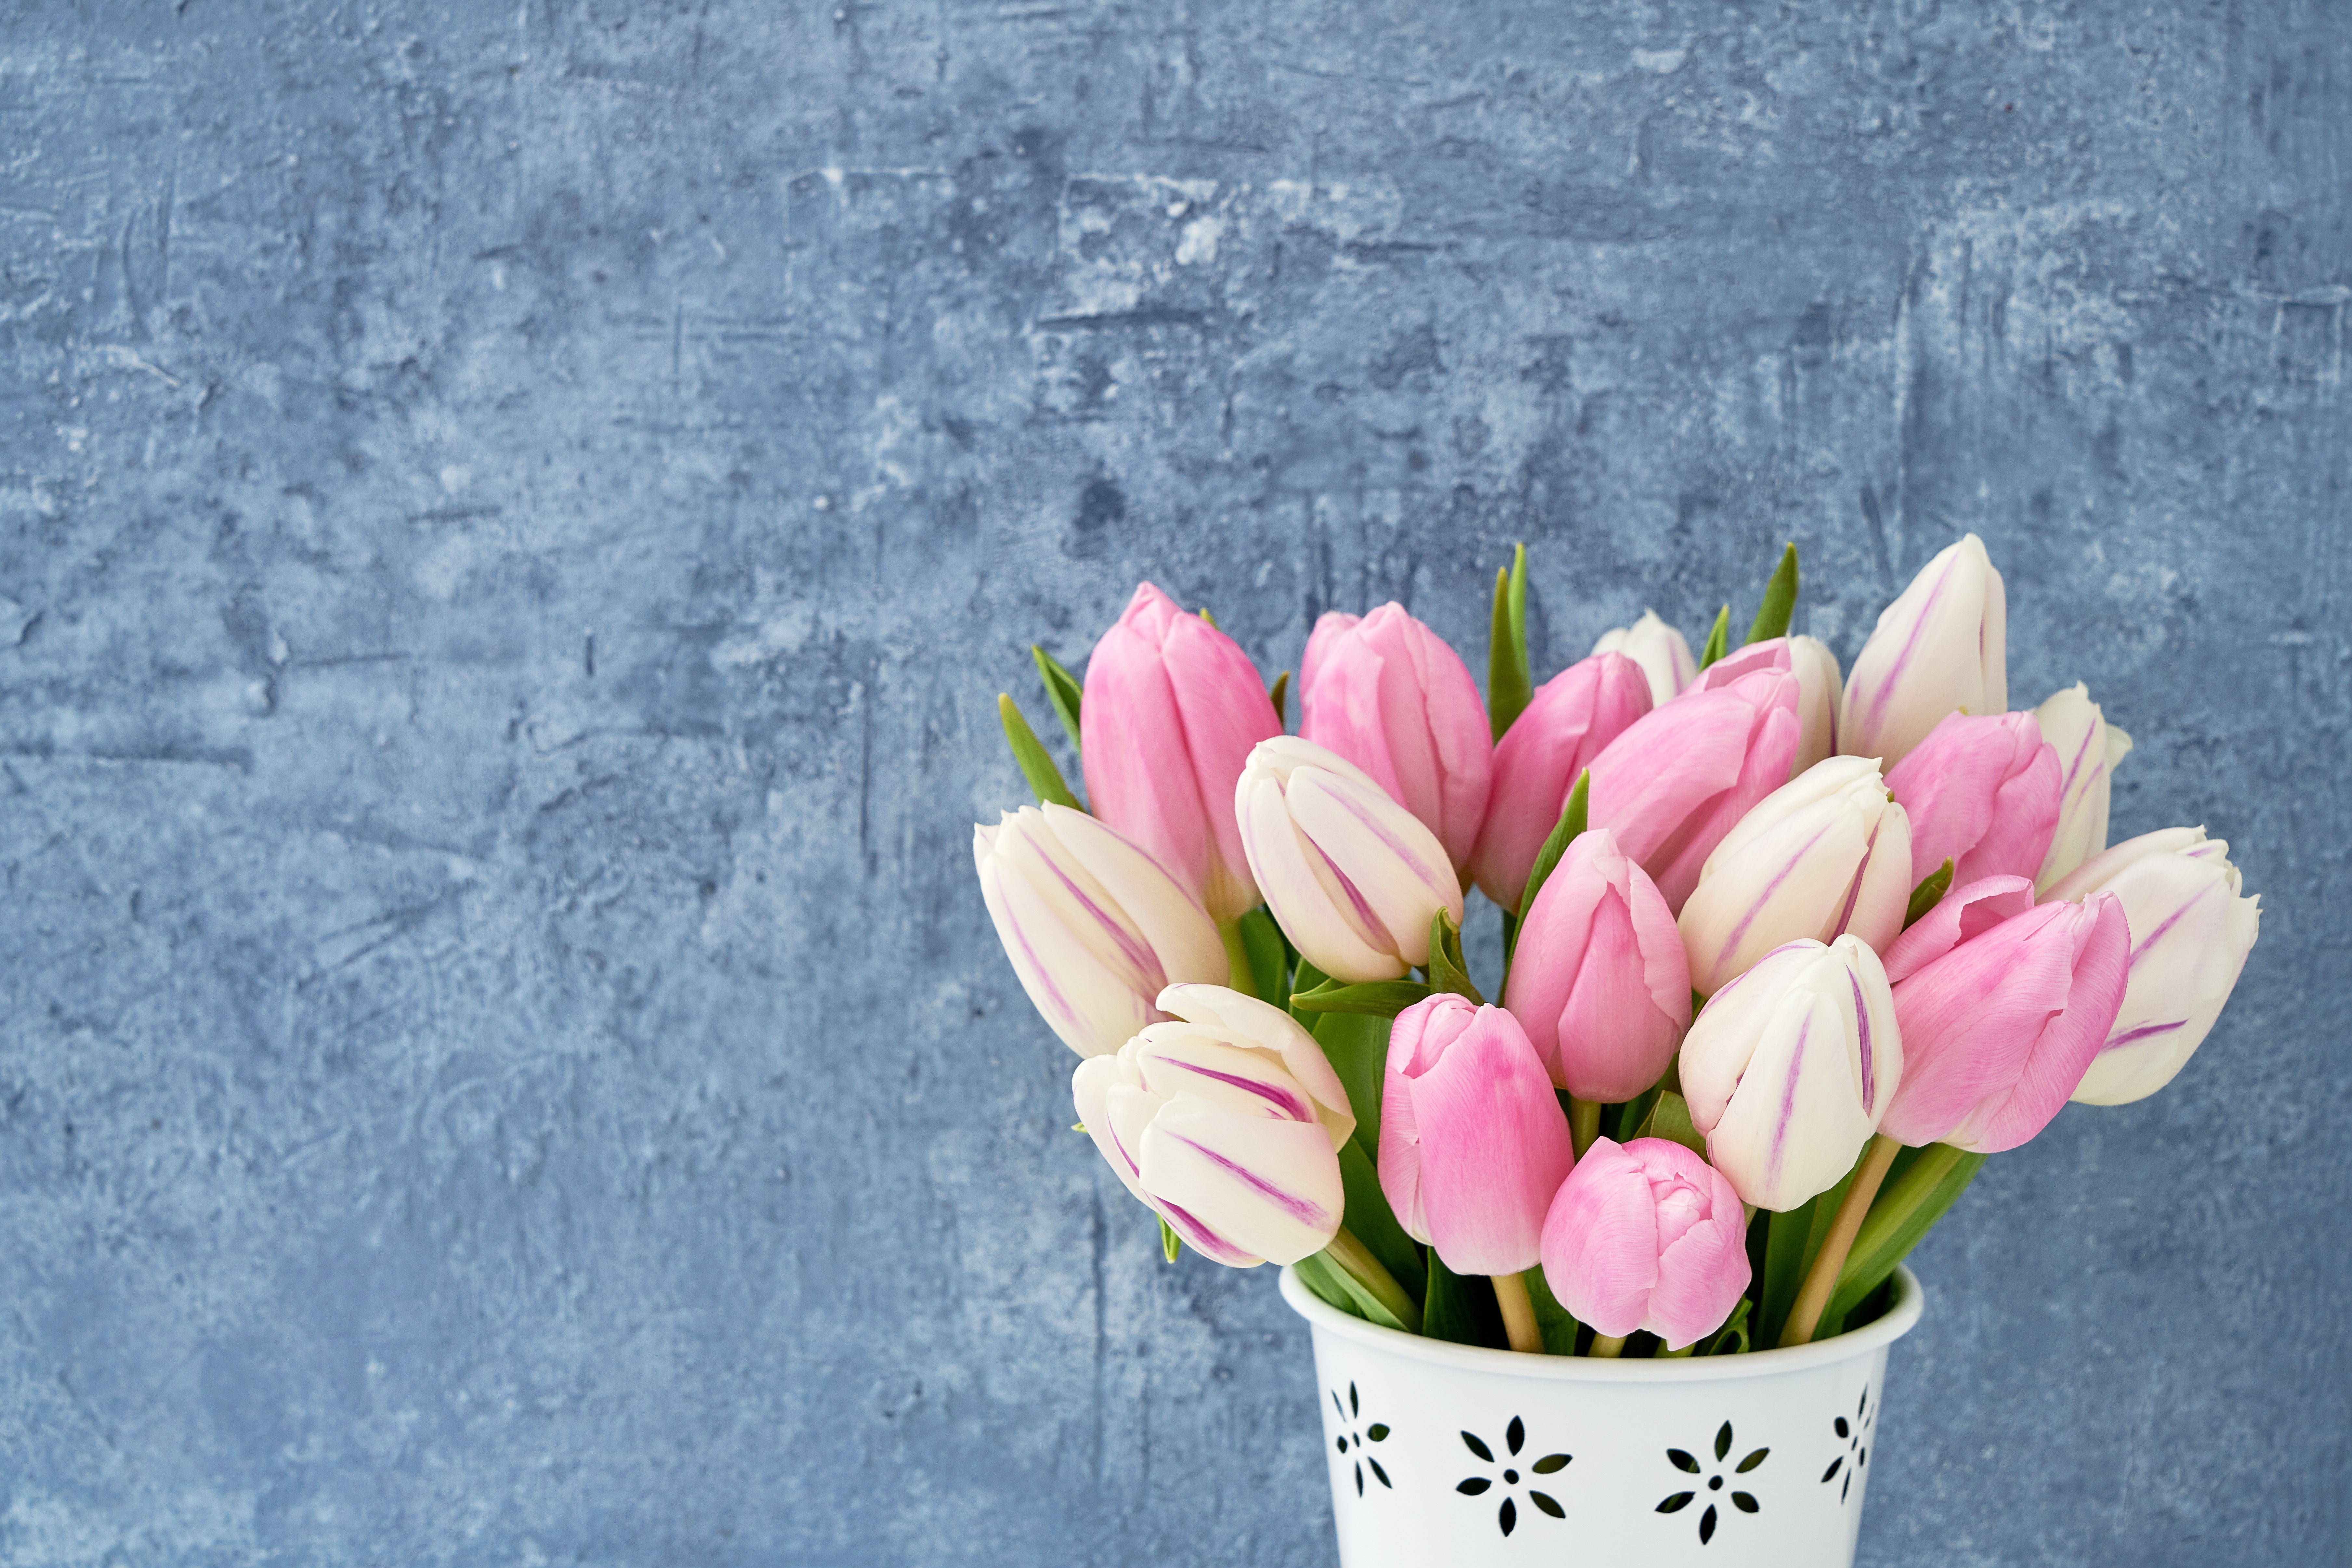 Фон тюльпаны нежный. Розовые тюльпаны. Букет тюльпанов. Букет весенних цветов. Тюльпаны пастельных тонов.